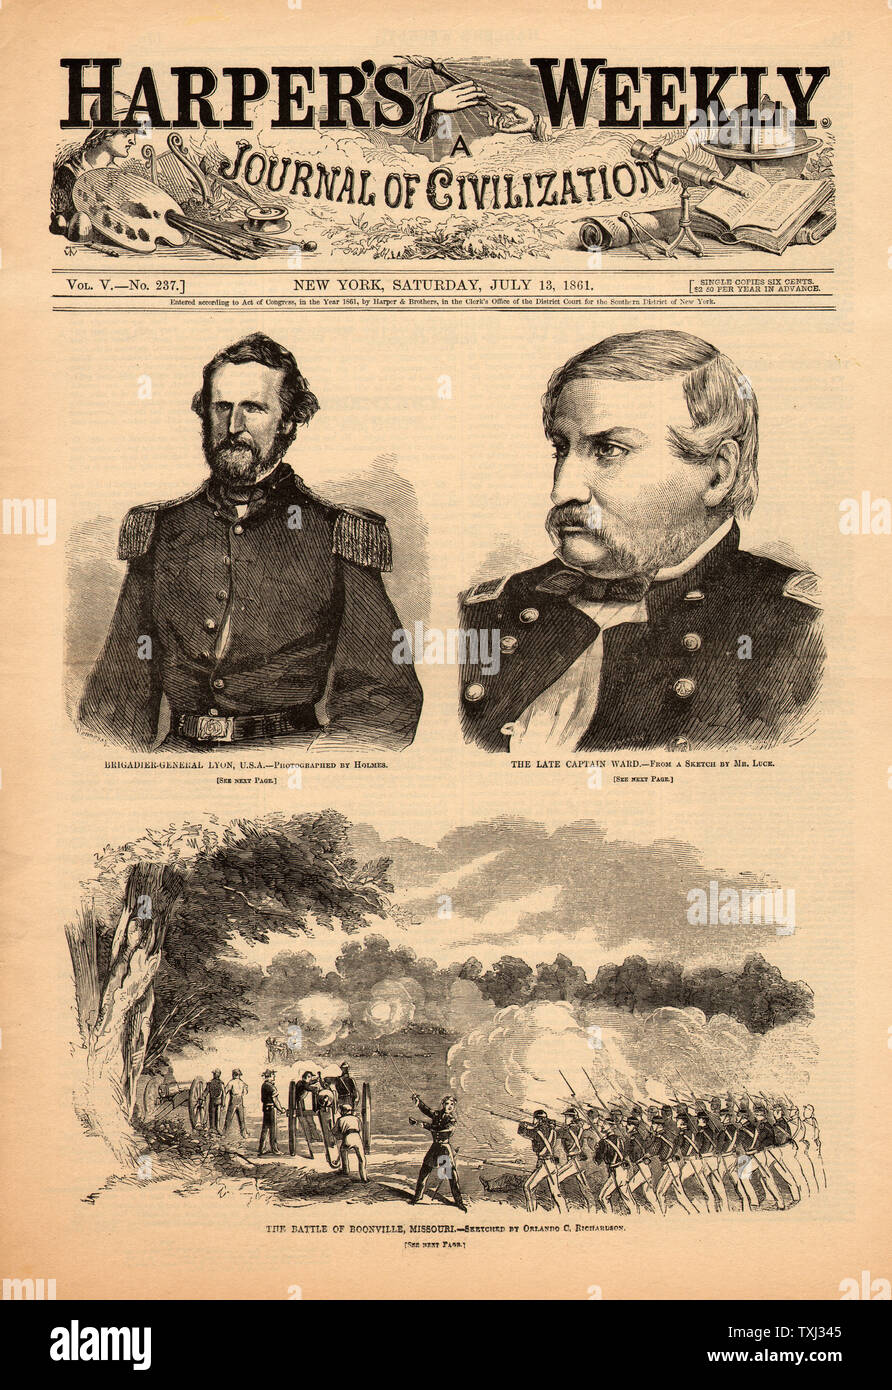 1861 Harper's Weekly page avant guerre civile américaine Bataille de Boonville Banque D'Images